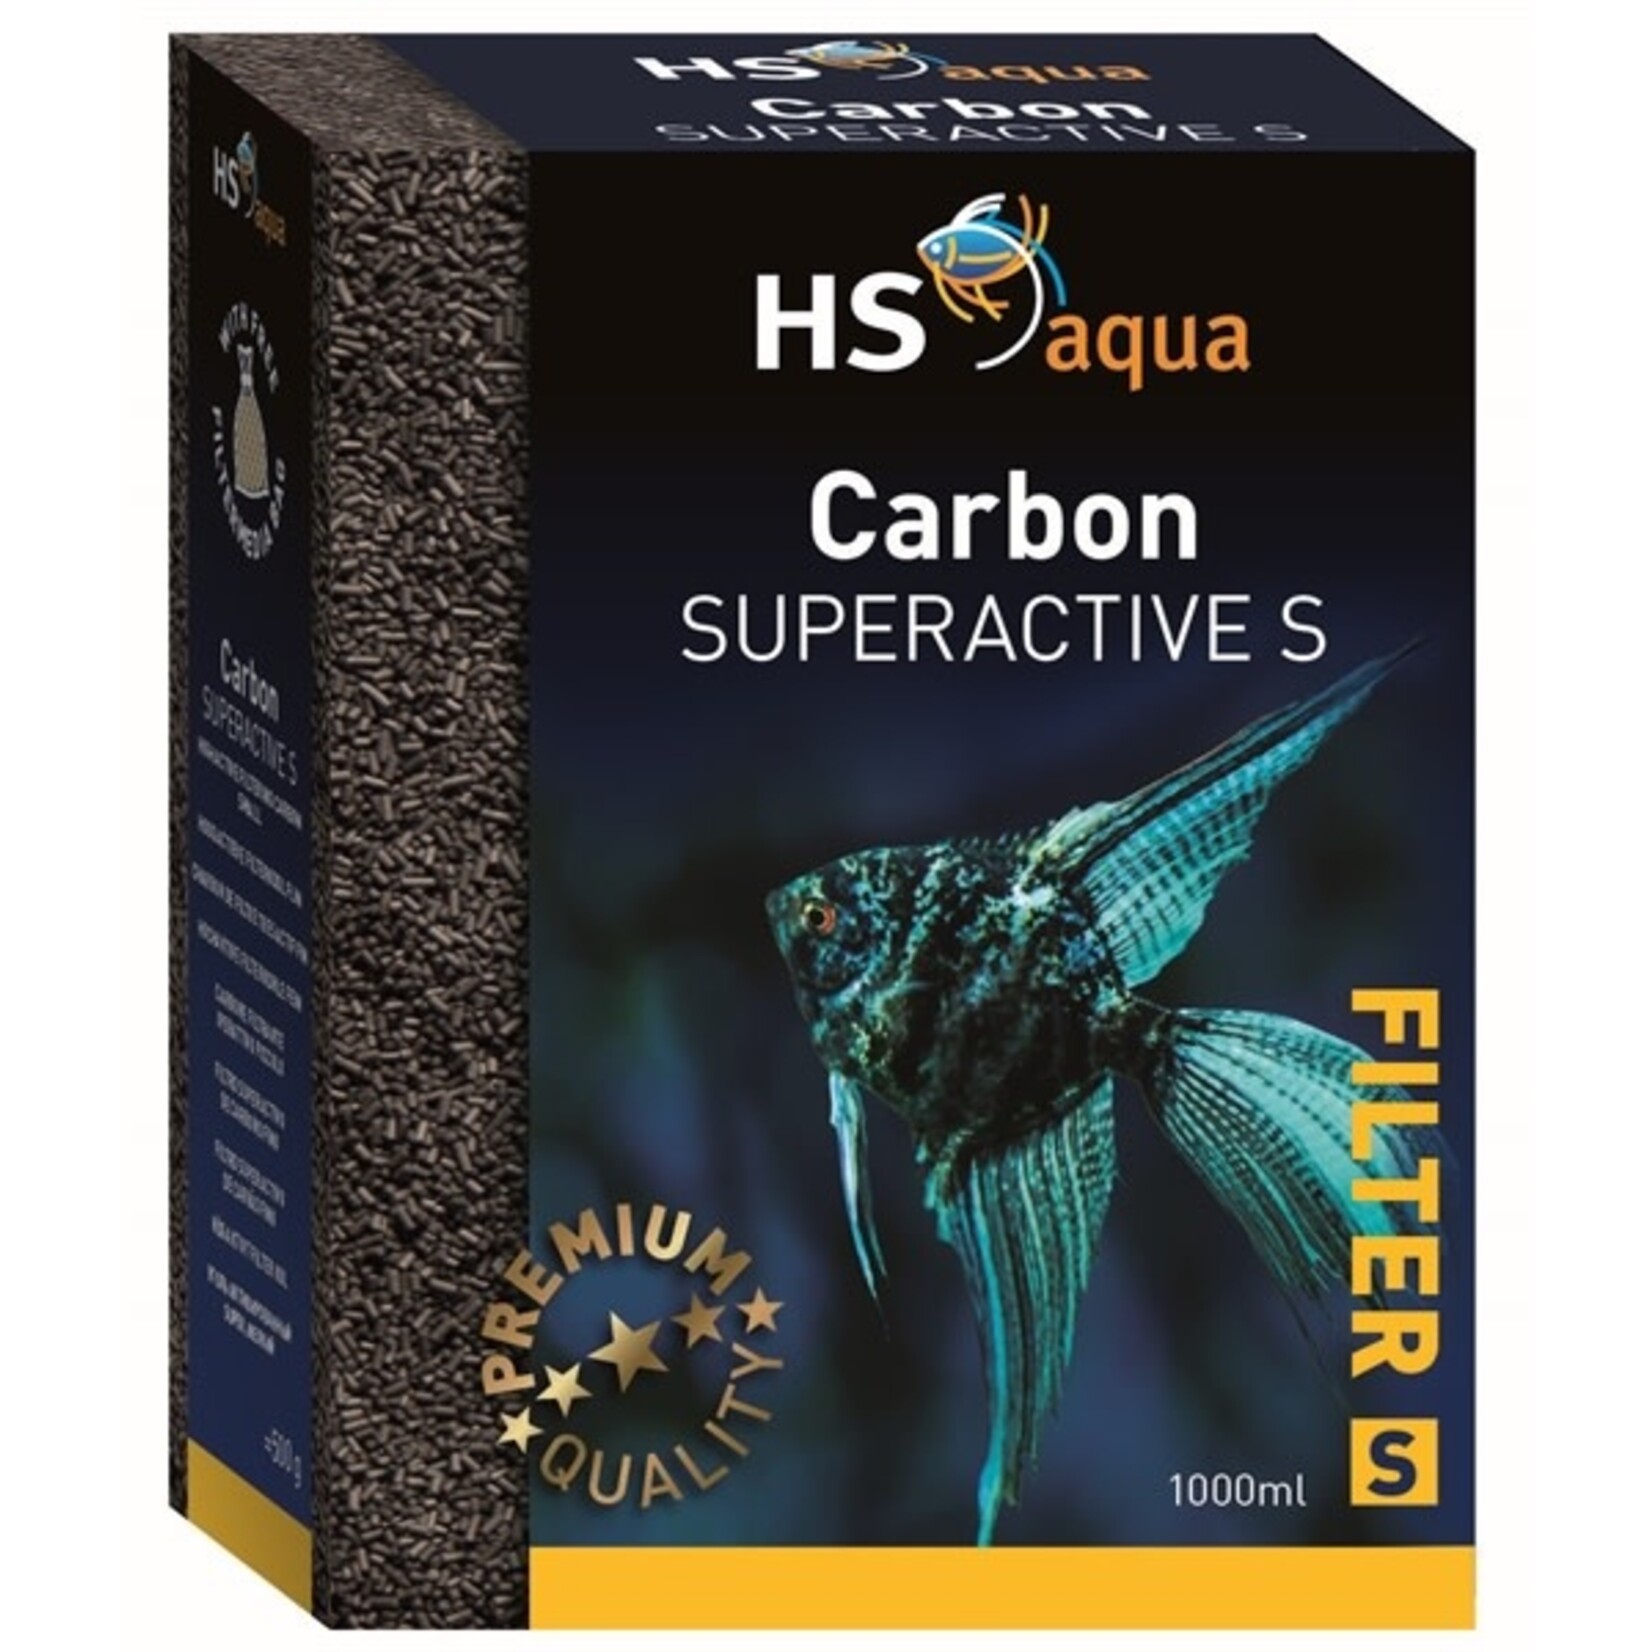 HS Aqua Carbon super active s 1 l/500 g